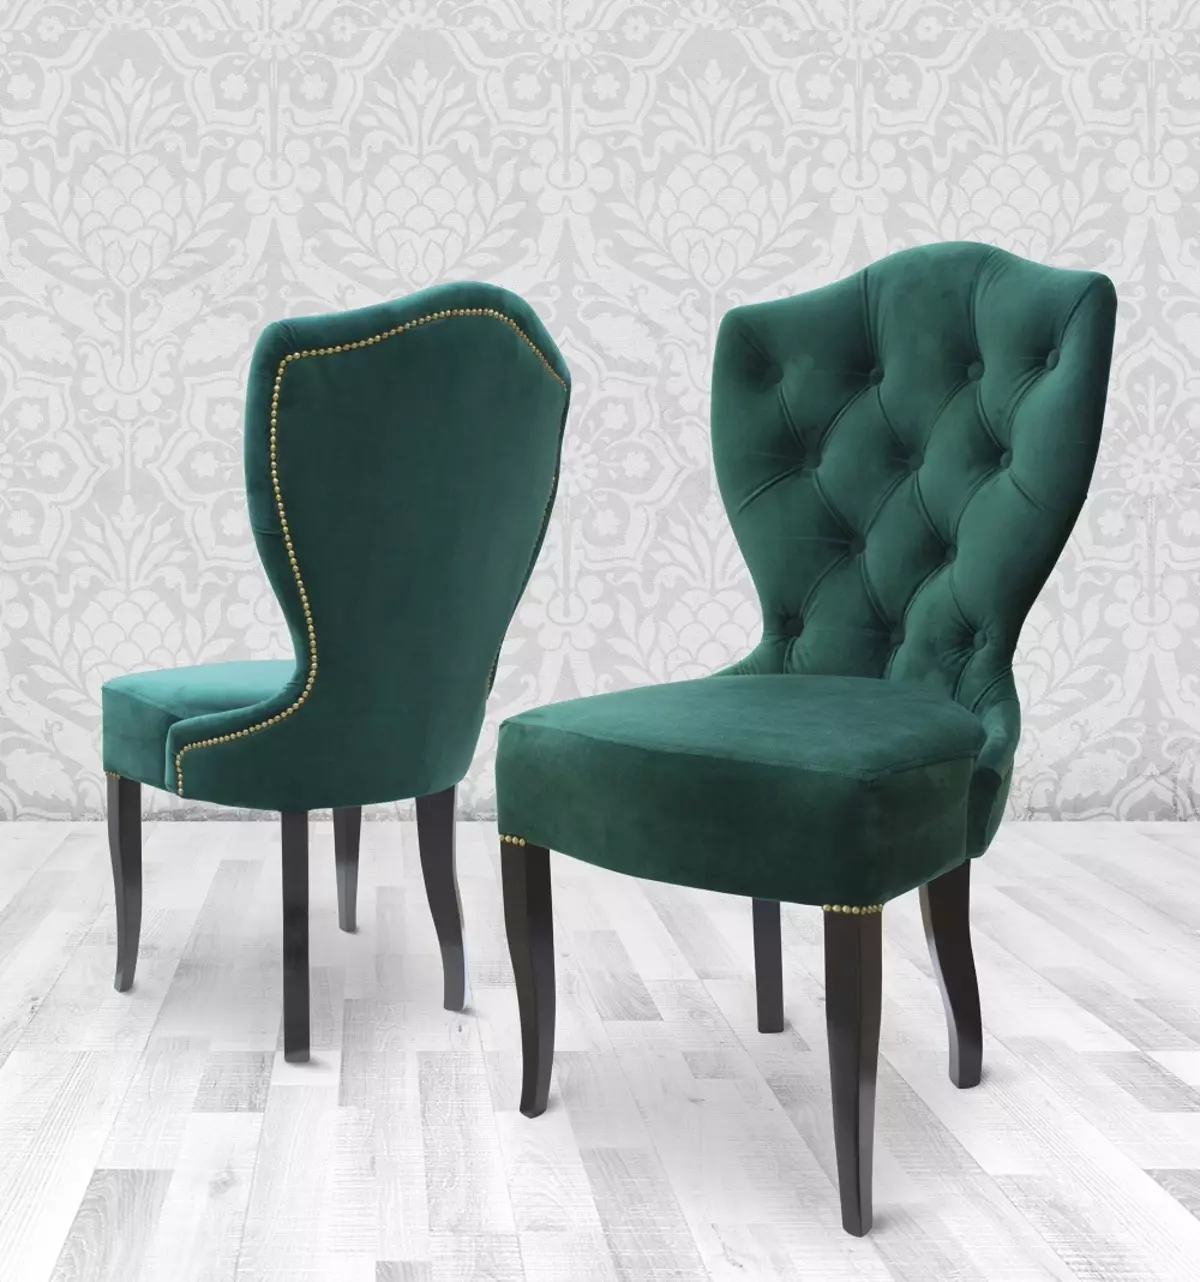 Փափուկ աթոռներ հյուրասենյակի համար. Ամբիոնի աթոռներ Առանձնահատկություններ, փափուկ եւ բազկագործական մոդելներ եւ այլ տարբերակներ 9751_9